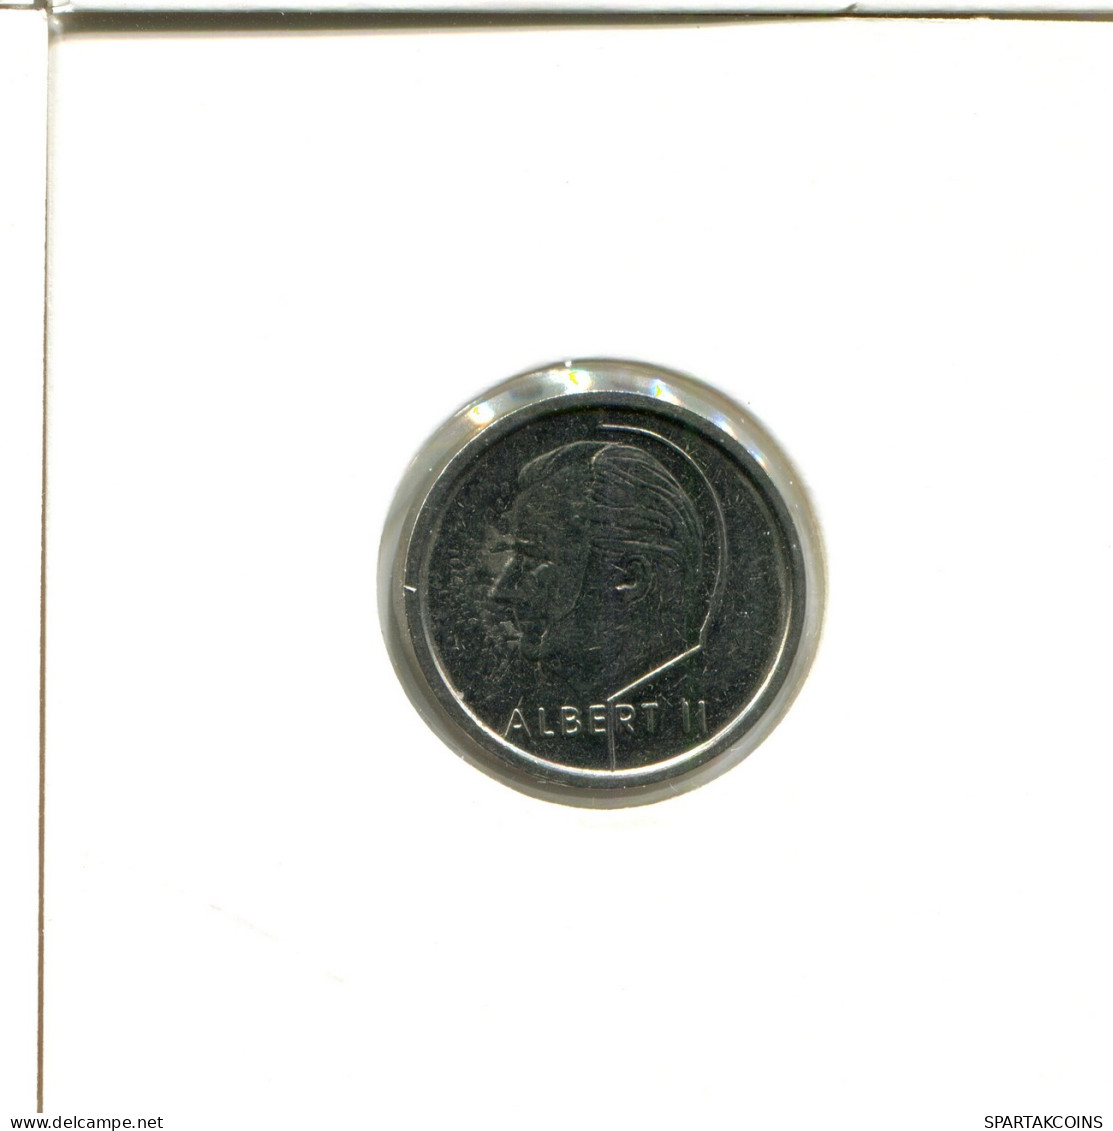 1 FRANC 1994 BÉLGICA BELGIUM Moneda DUTCH Text #AX420.E - 1 Frank